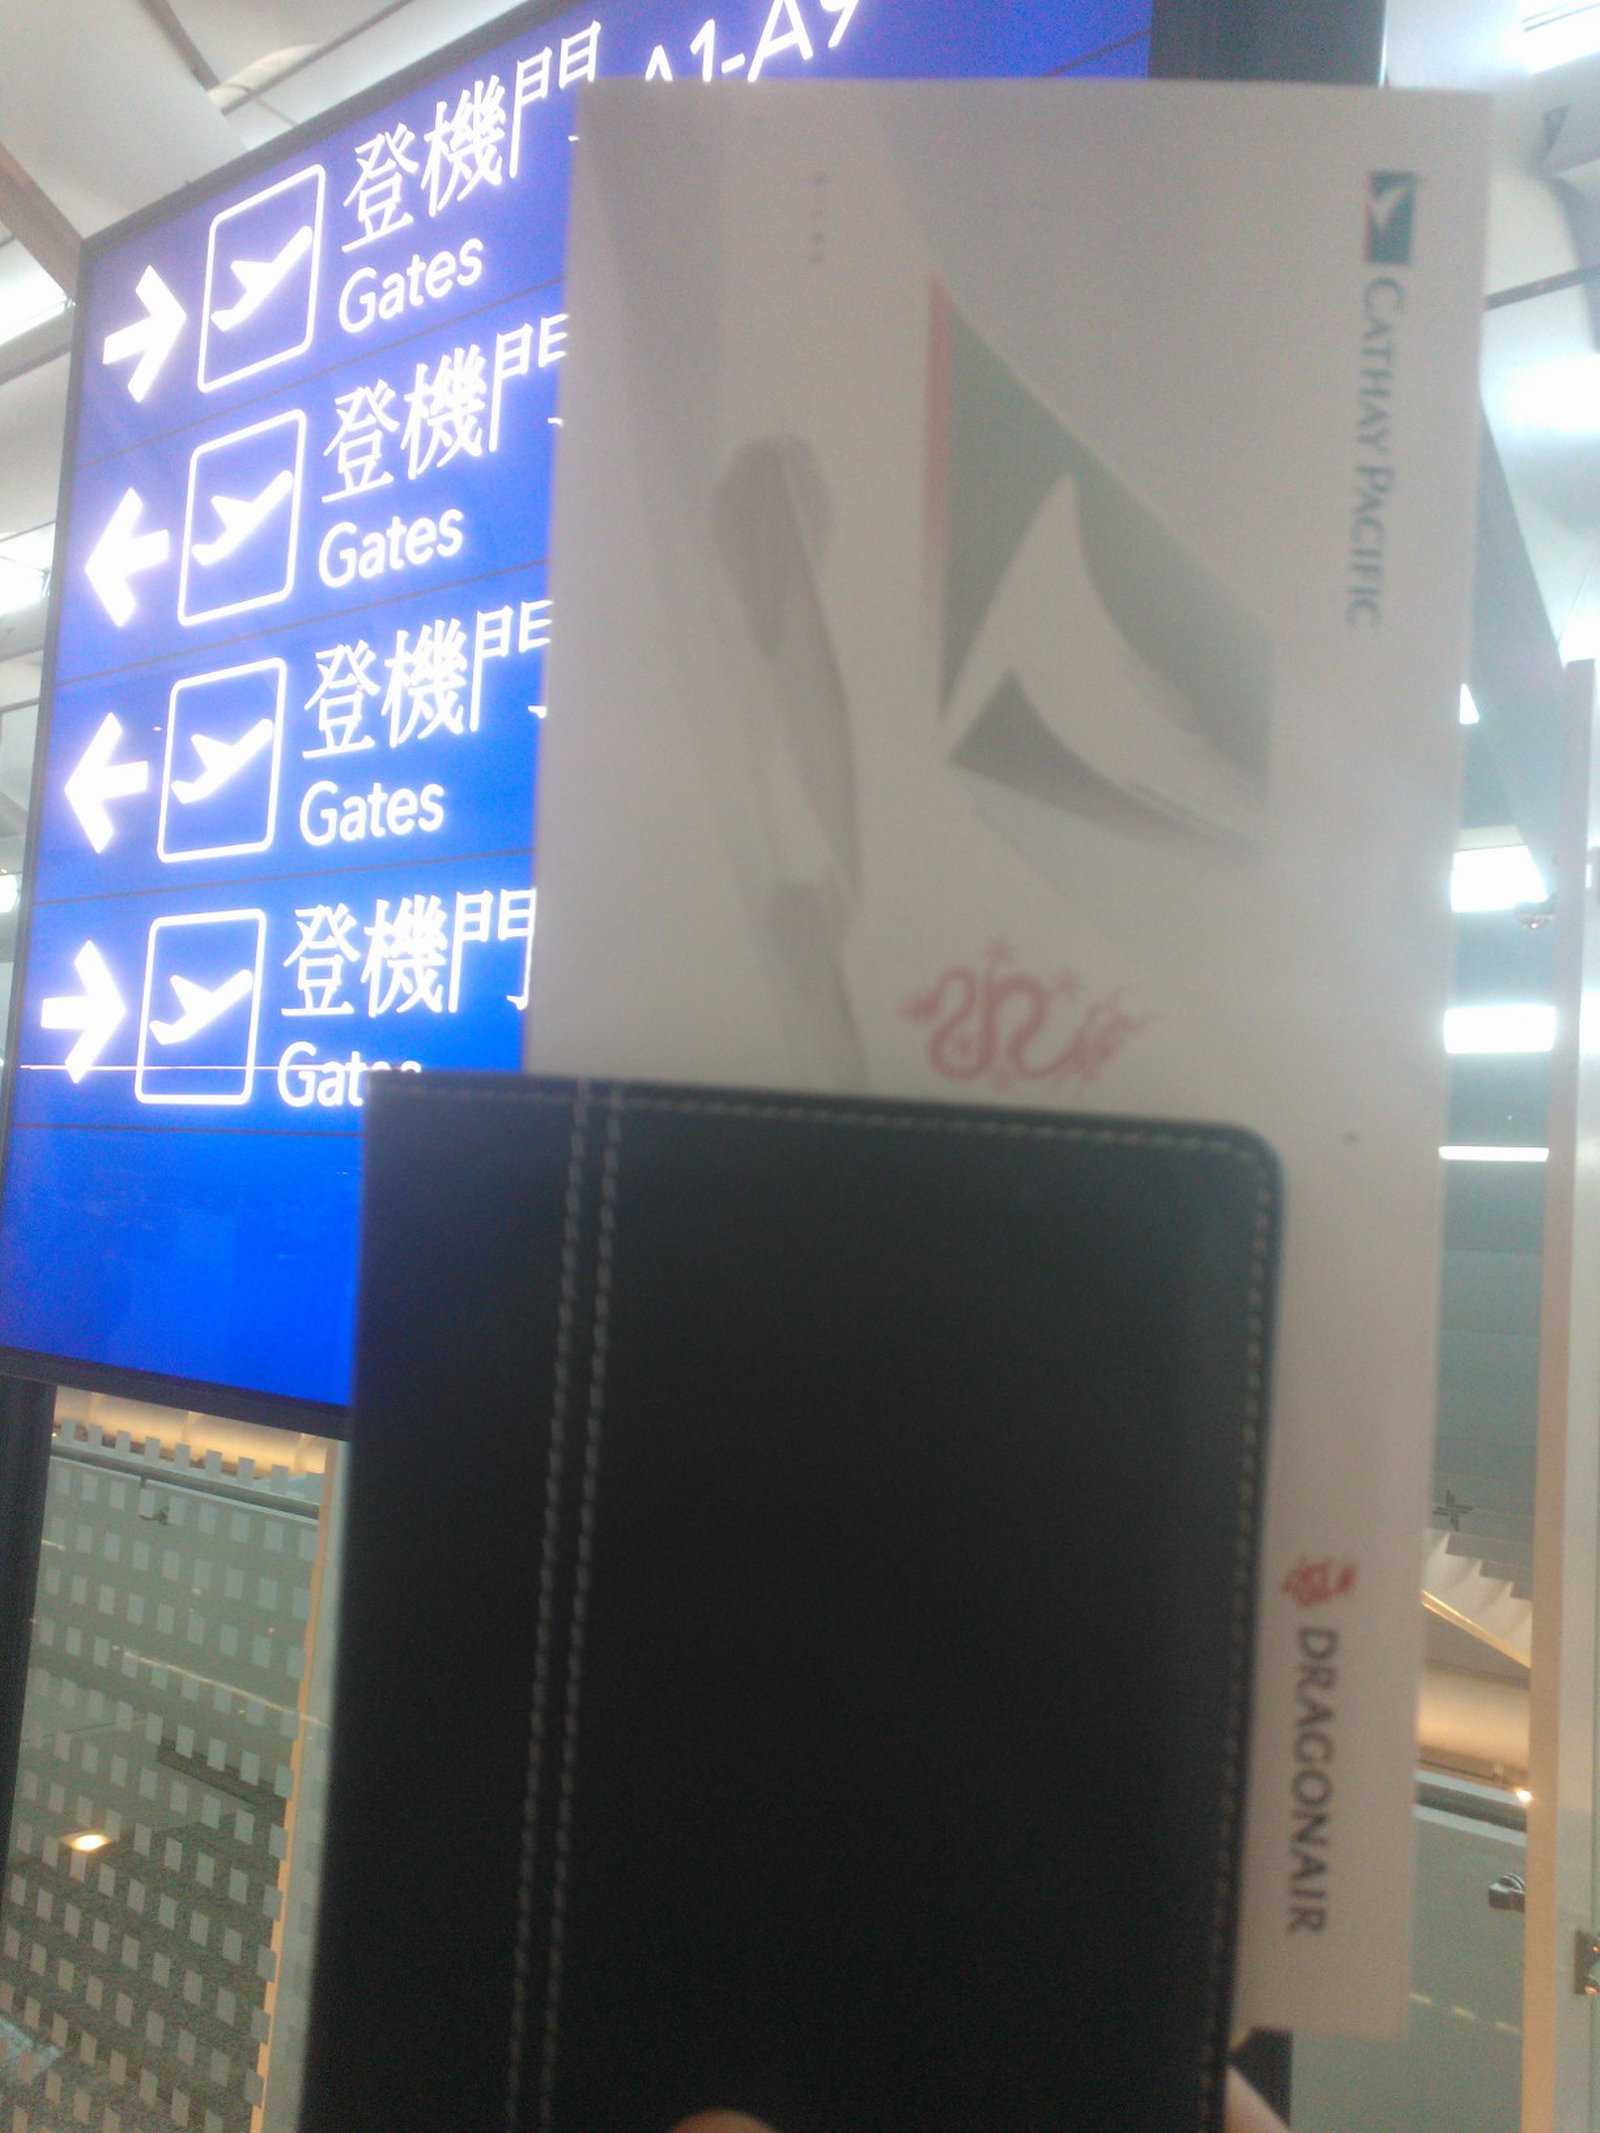 一些航空公司的机票附加封套，无形中保护乘客隐私。